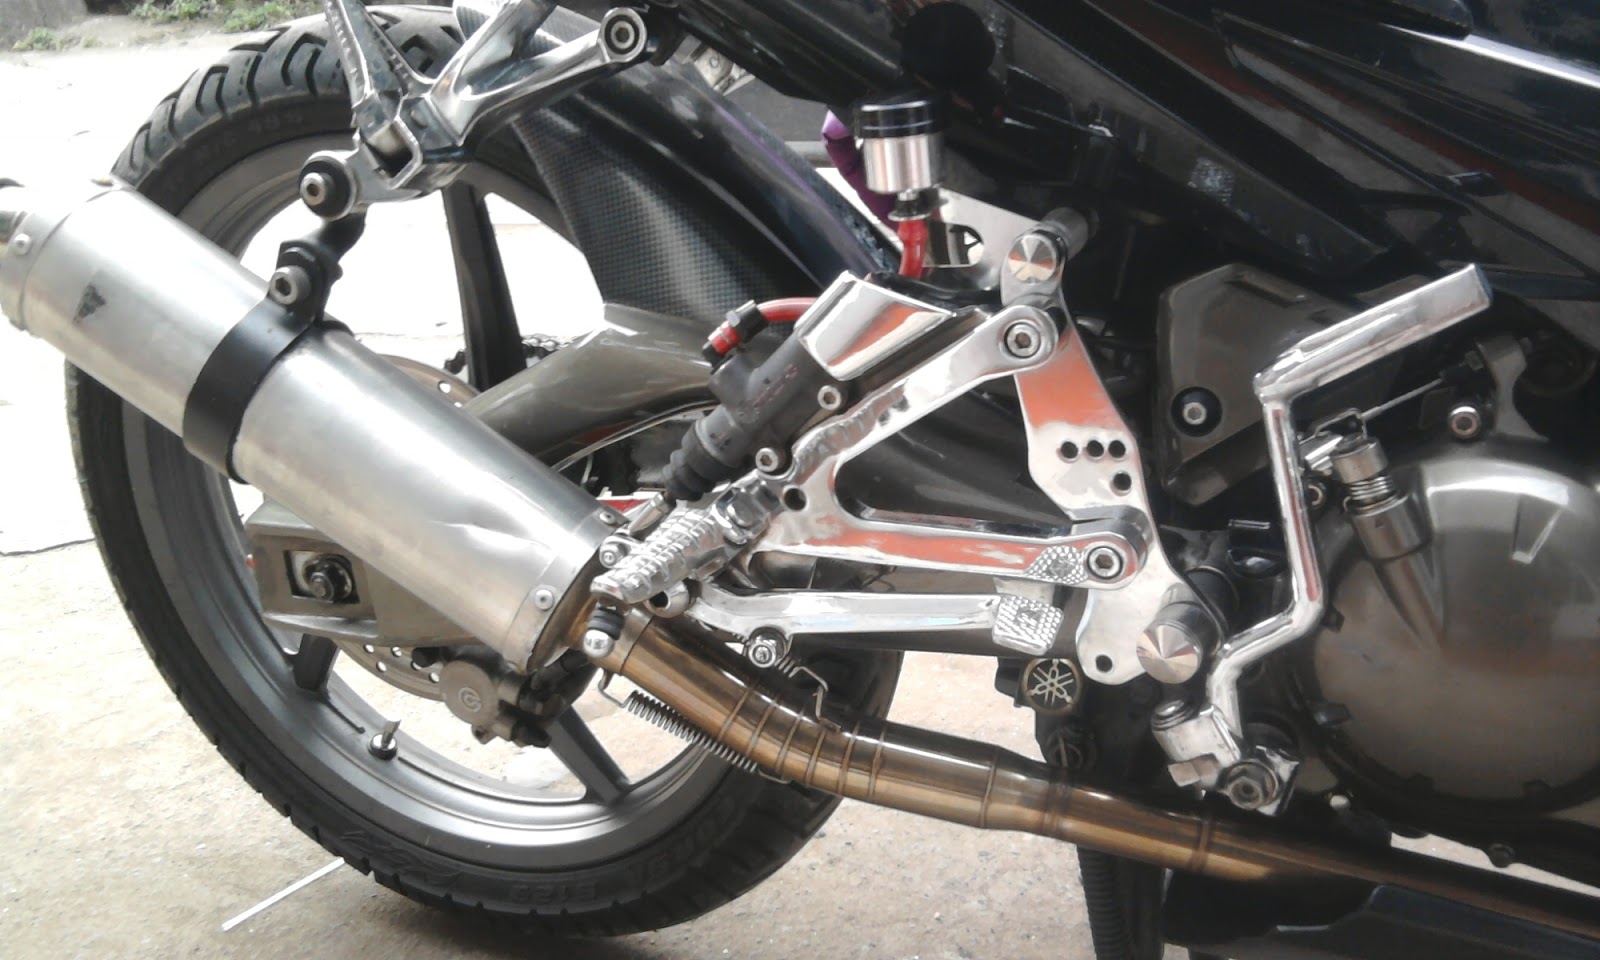  Modifikasi  Motor Yamaha 2019 Modifikasi Warna Jupiter Mx Lama 